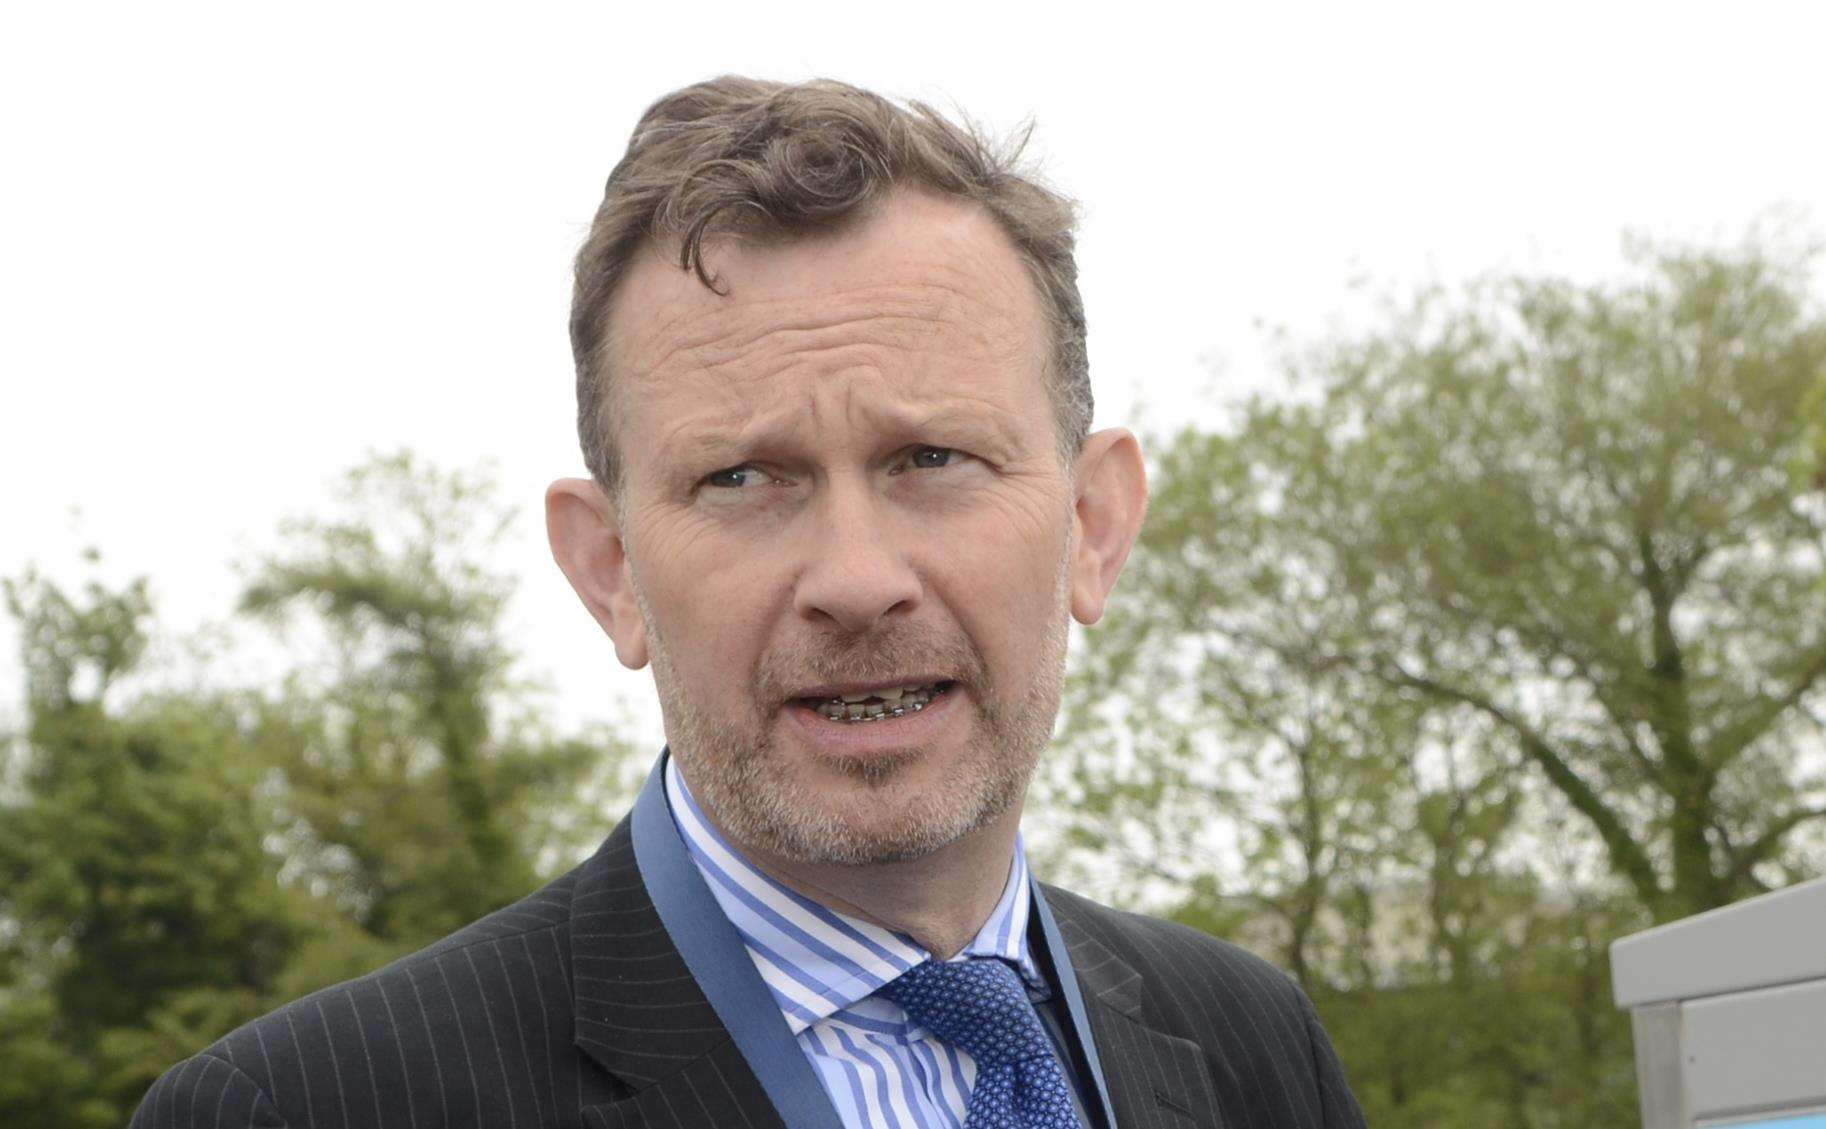 Charles Horton has resigned as Govia Thameslink CEO